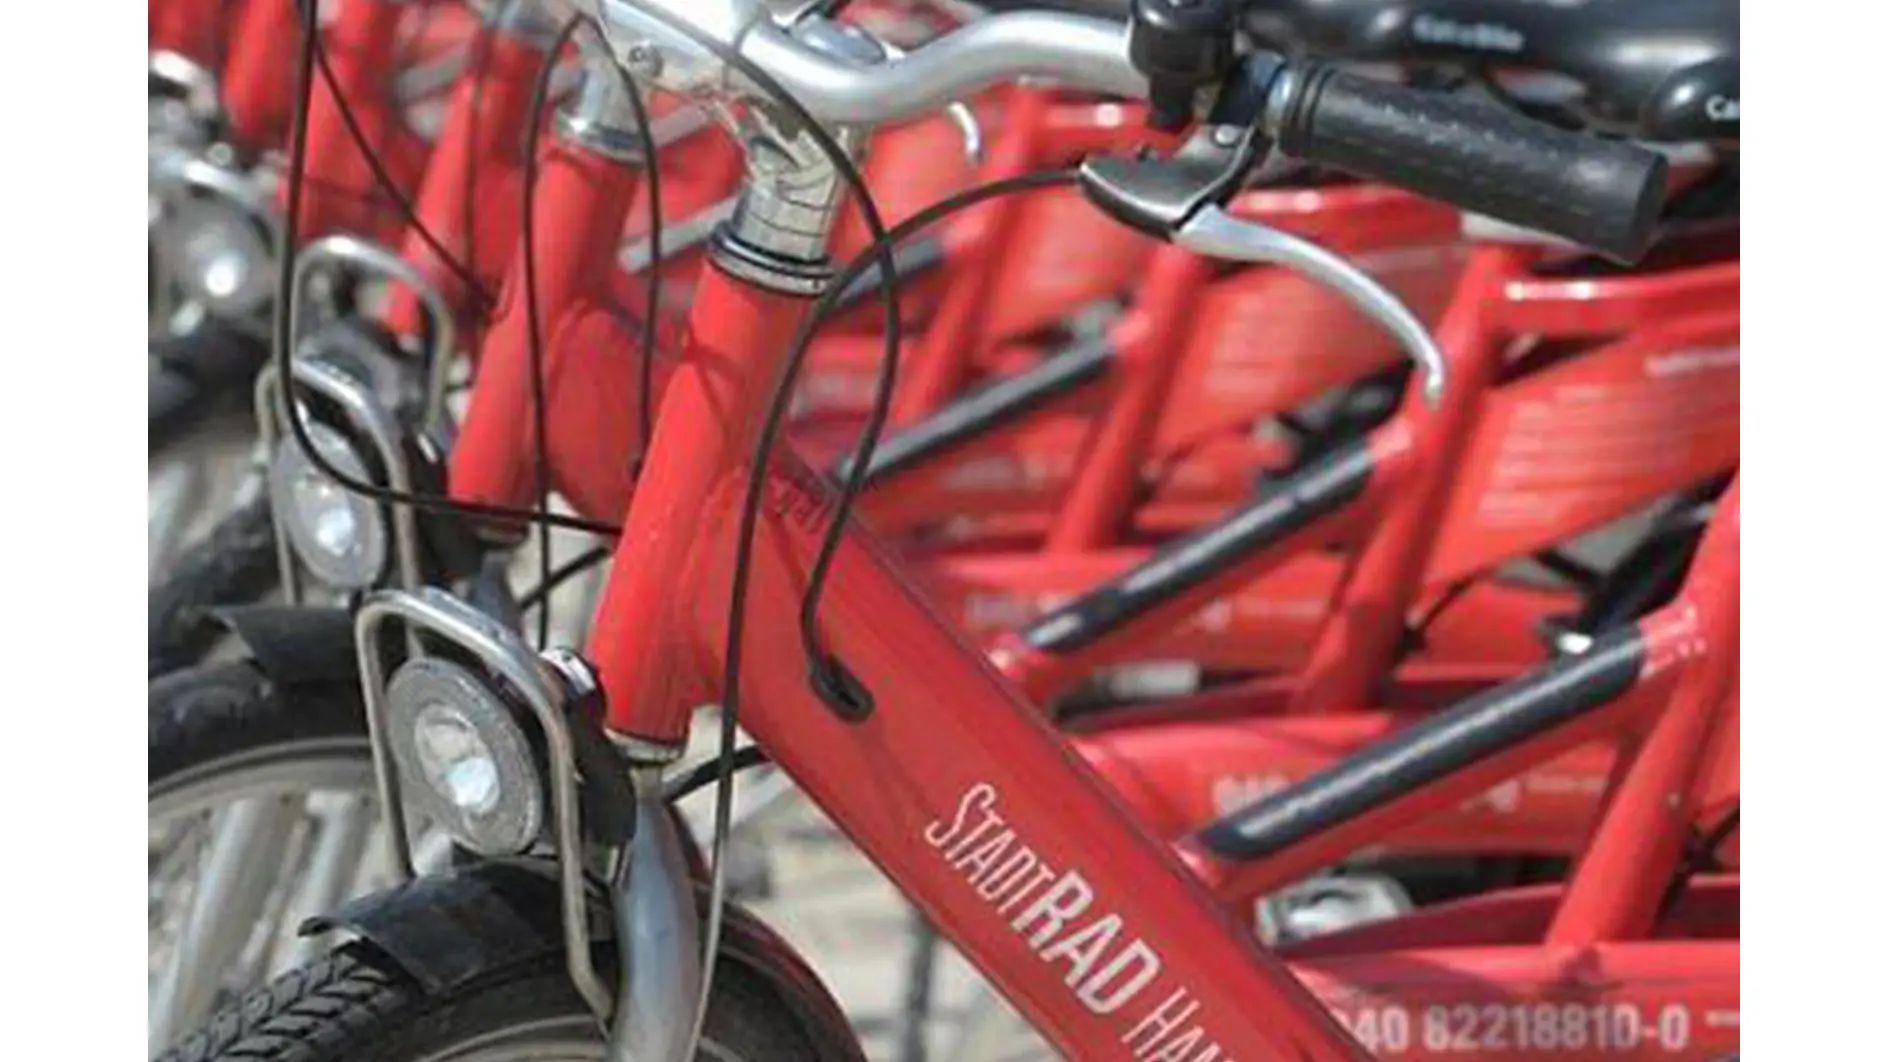 StadtRad Hamburg Bisiklet istasyonumuzdan bisiklet ödünç alabilir veya HVV'yi indirimli bir fiyata kullanabilirsiniz.